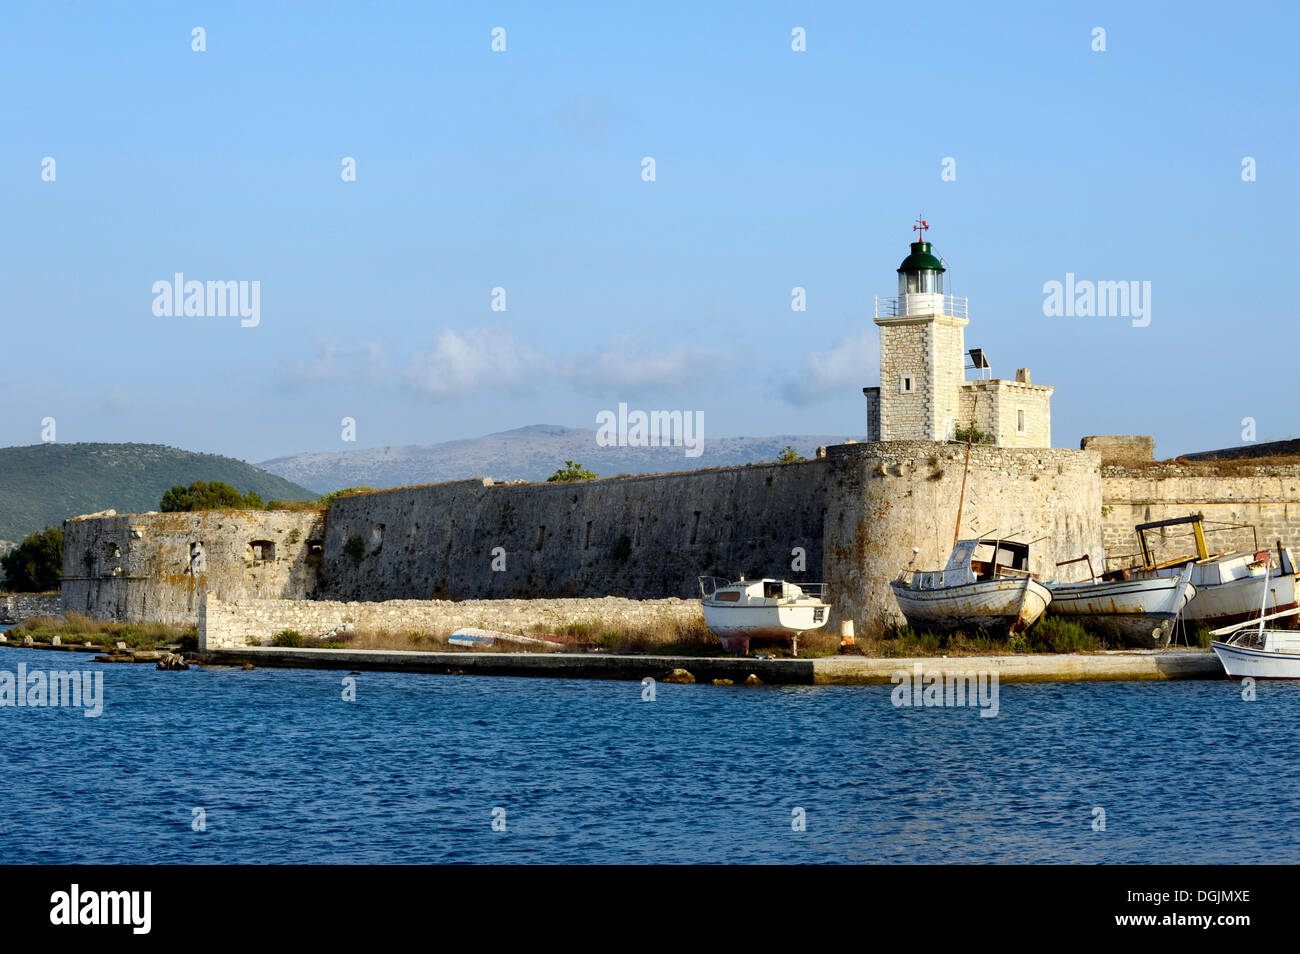 The medieval Aghia Mavra fortress, Lefkada, Lefkas, Greece, Europe Stock Photo